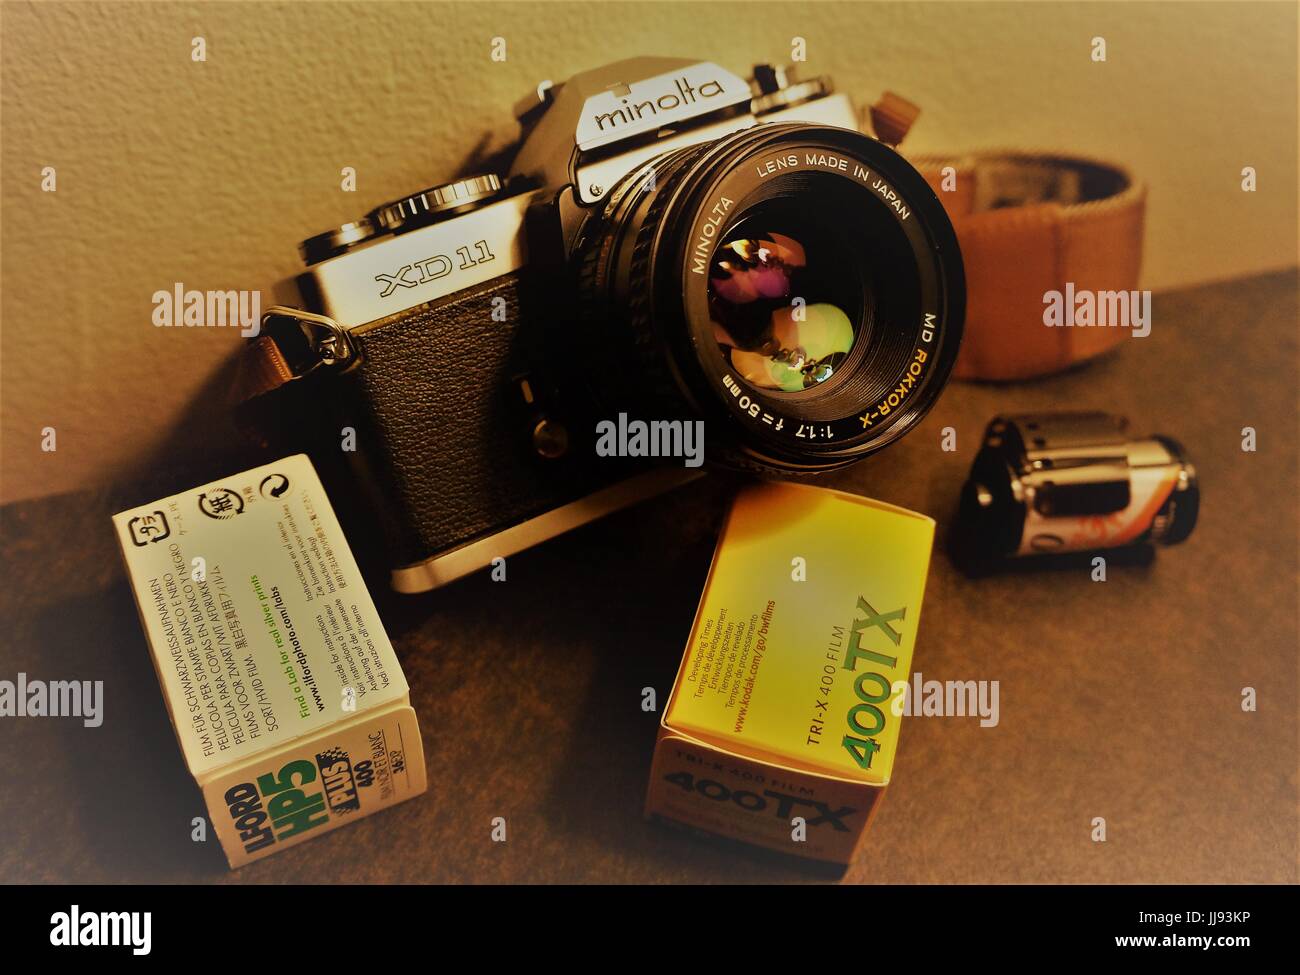 Minolta XD11 35mm Fotocamera con 50mm da f1,7 lente e rotoli di pellicola Foto Stock